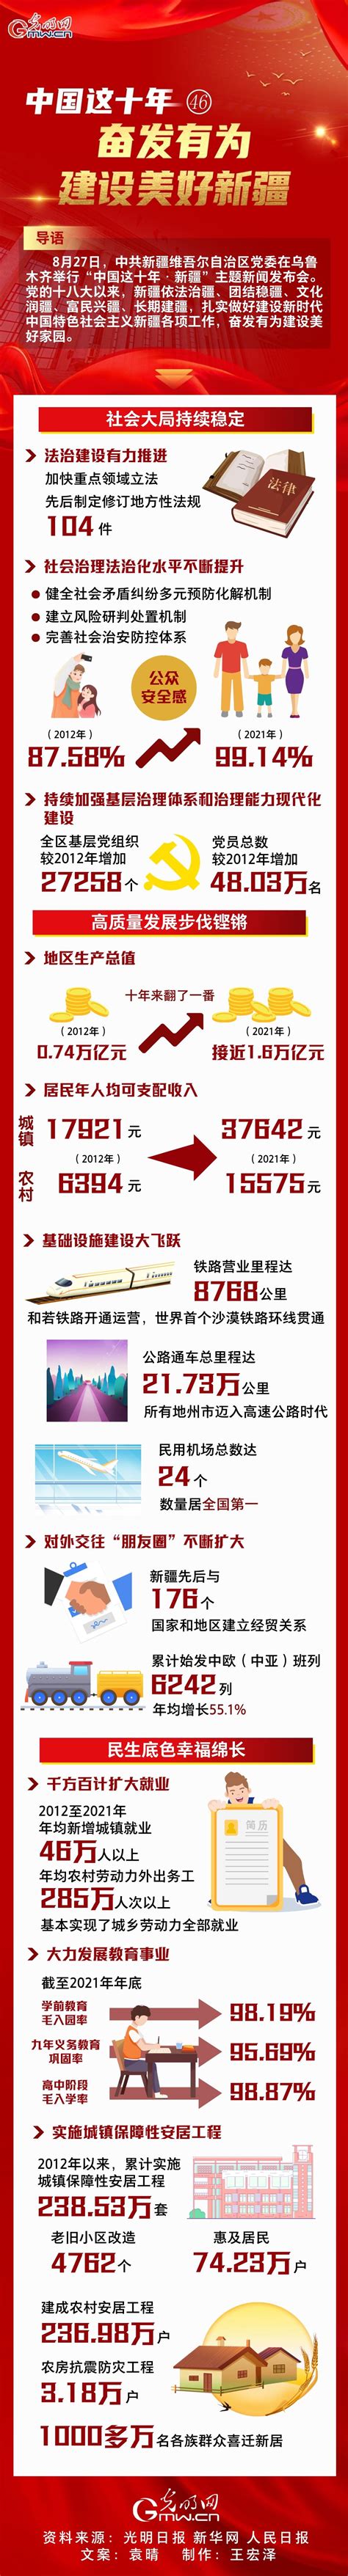 【中国这十年㊻】一图速览 奋发有为建设美好新疆 - 周到上海